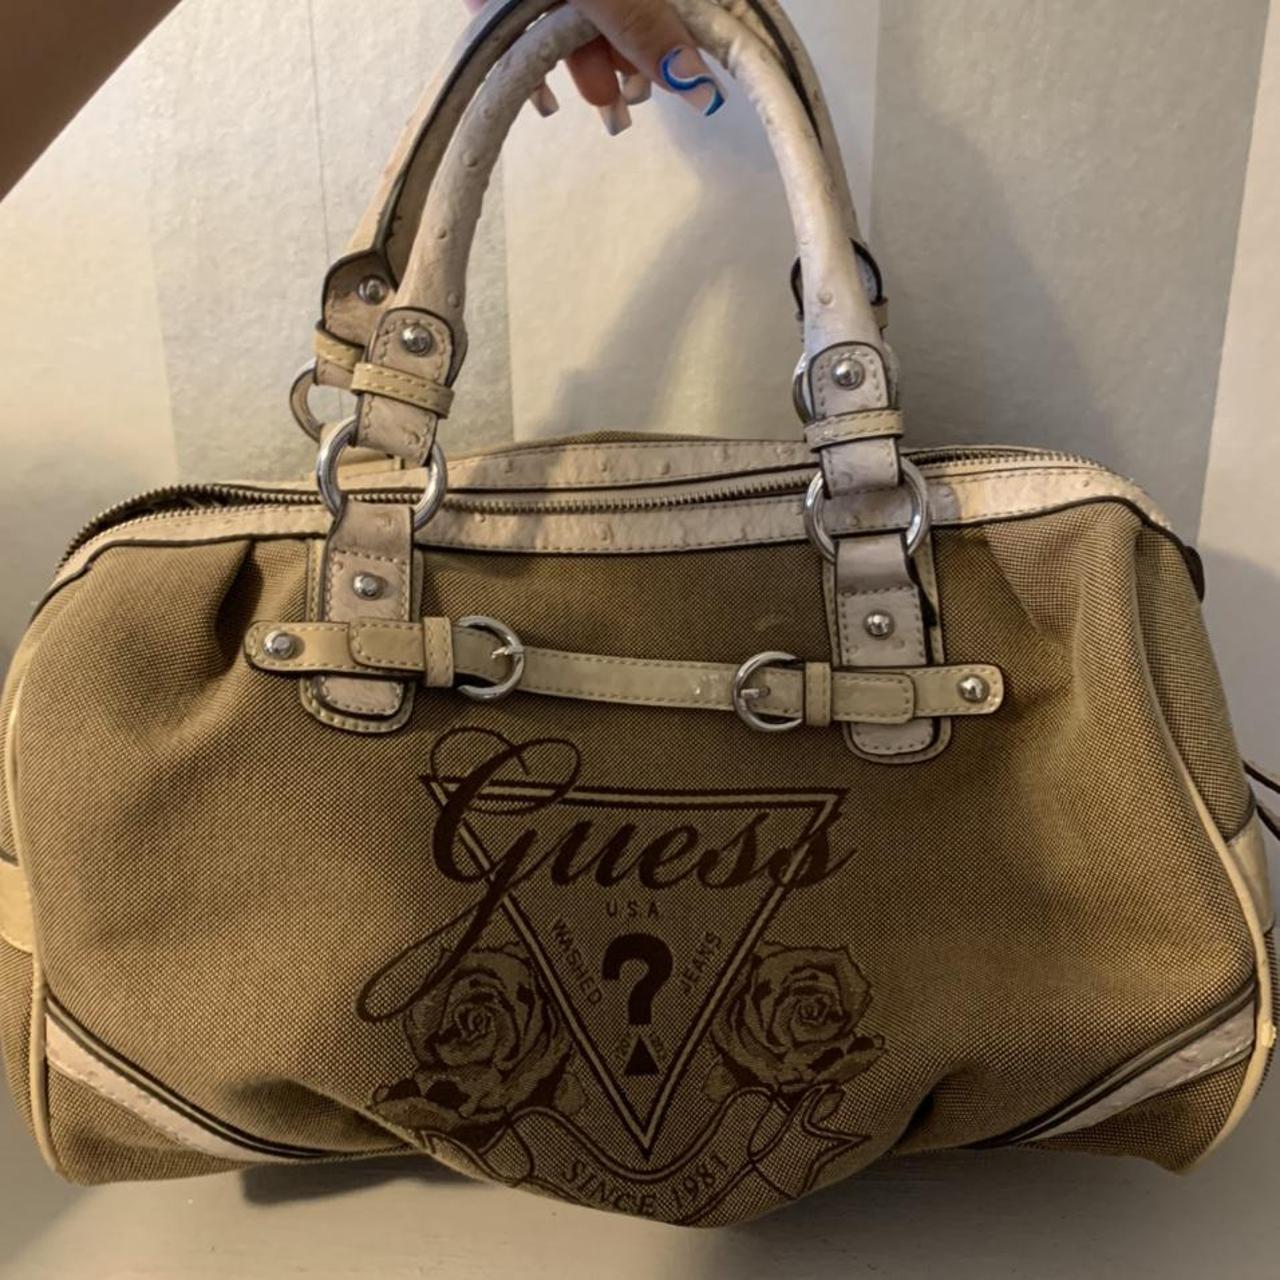 Guess Women's Bag